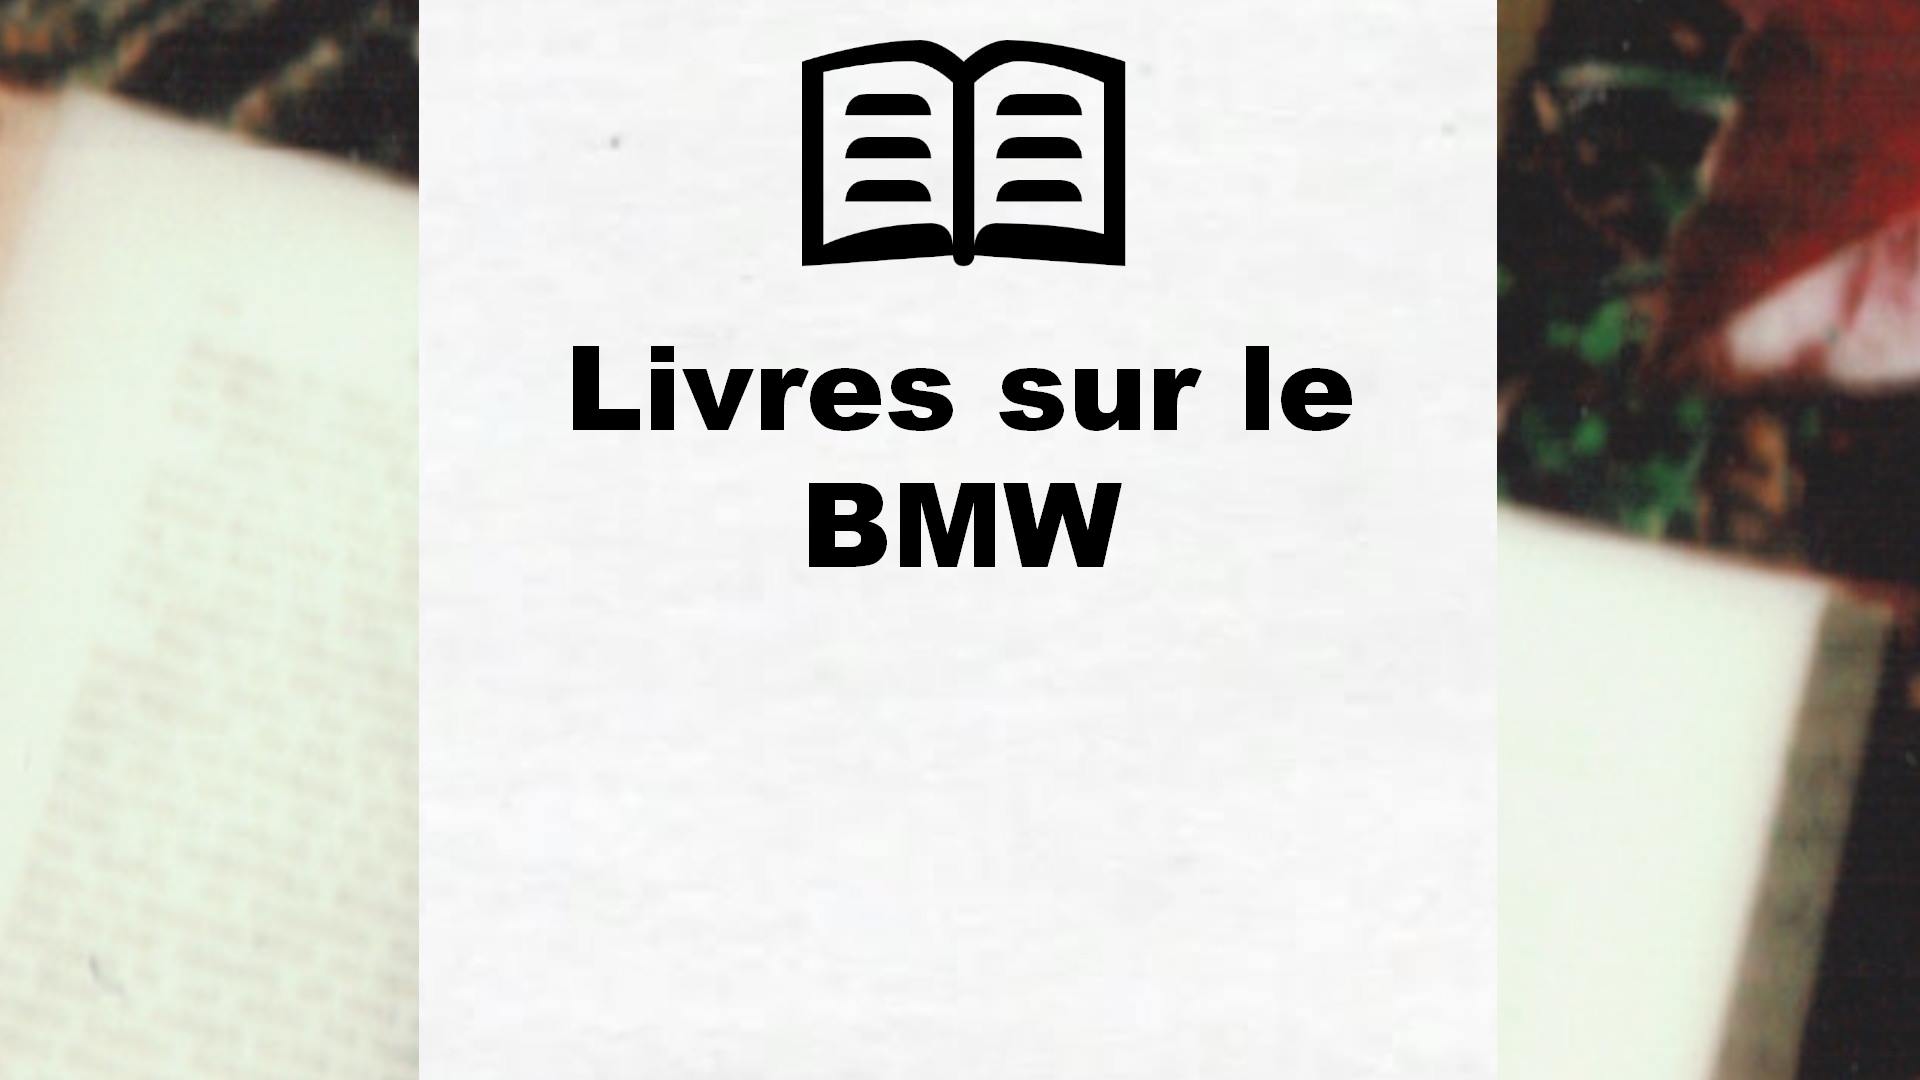 Livres sur le BMW